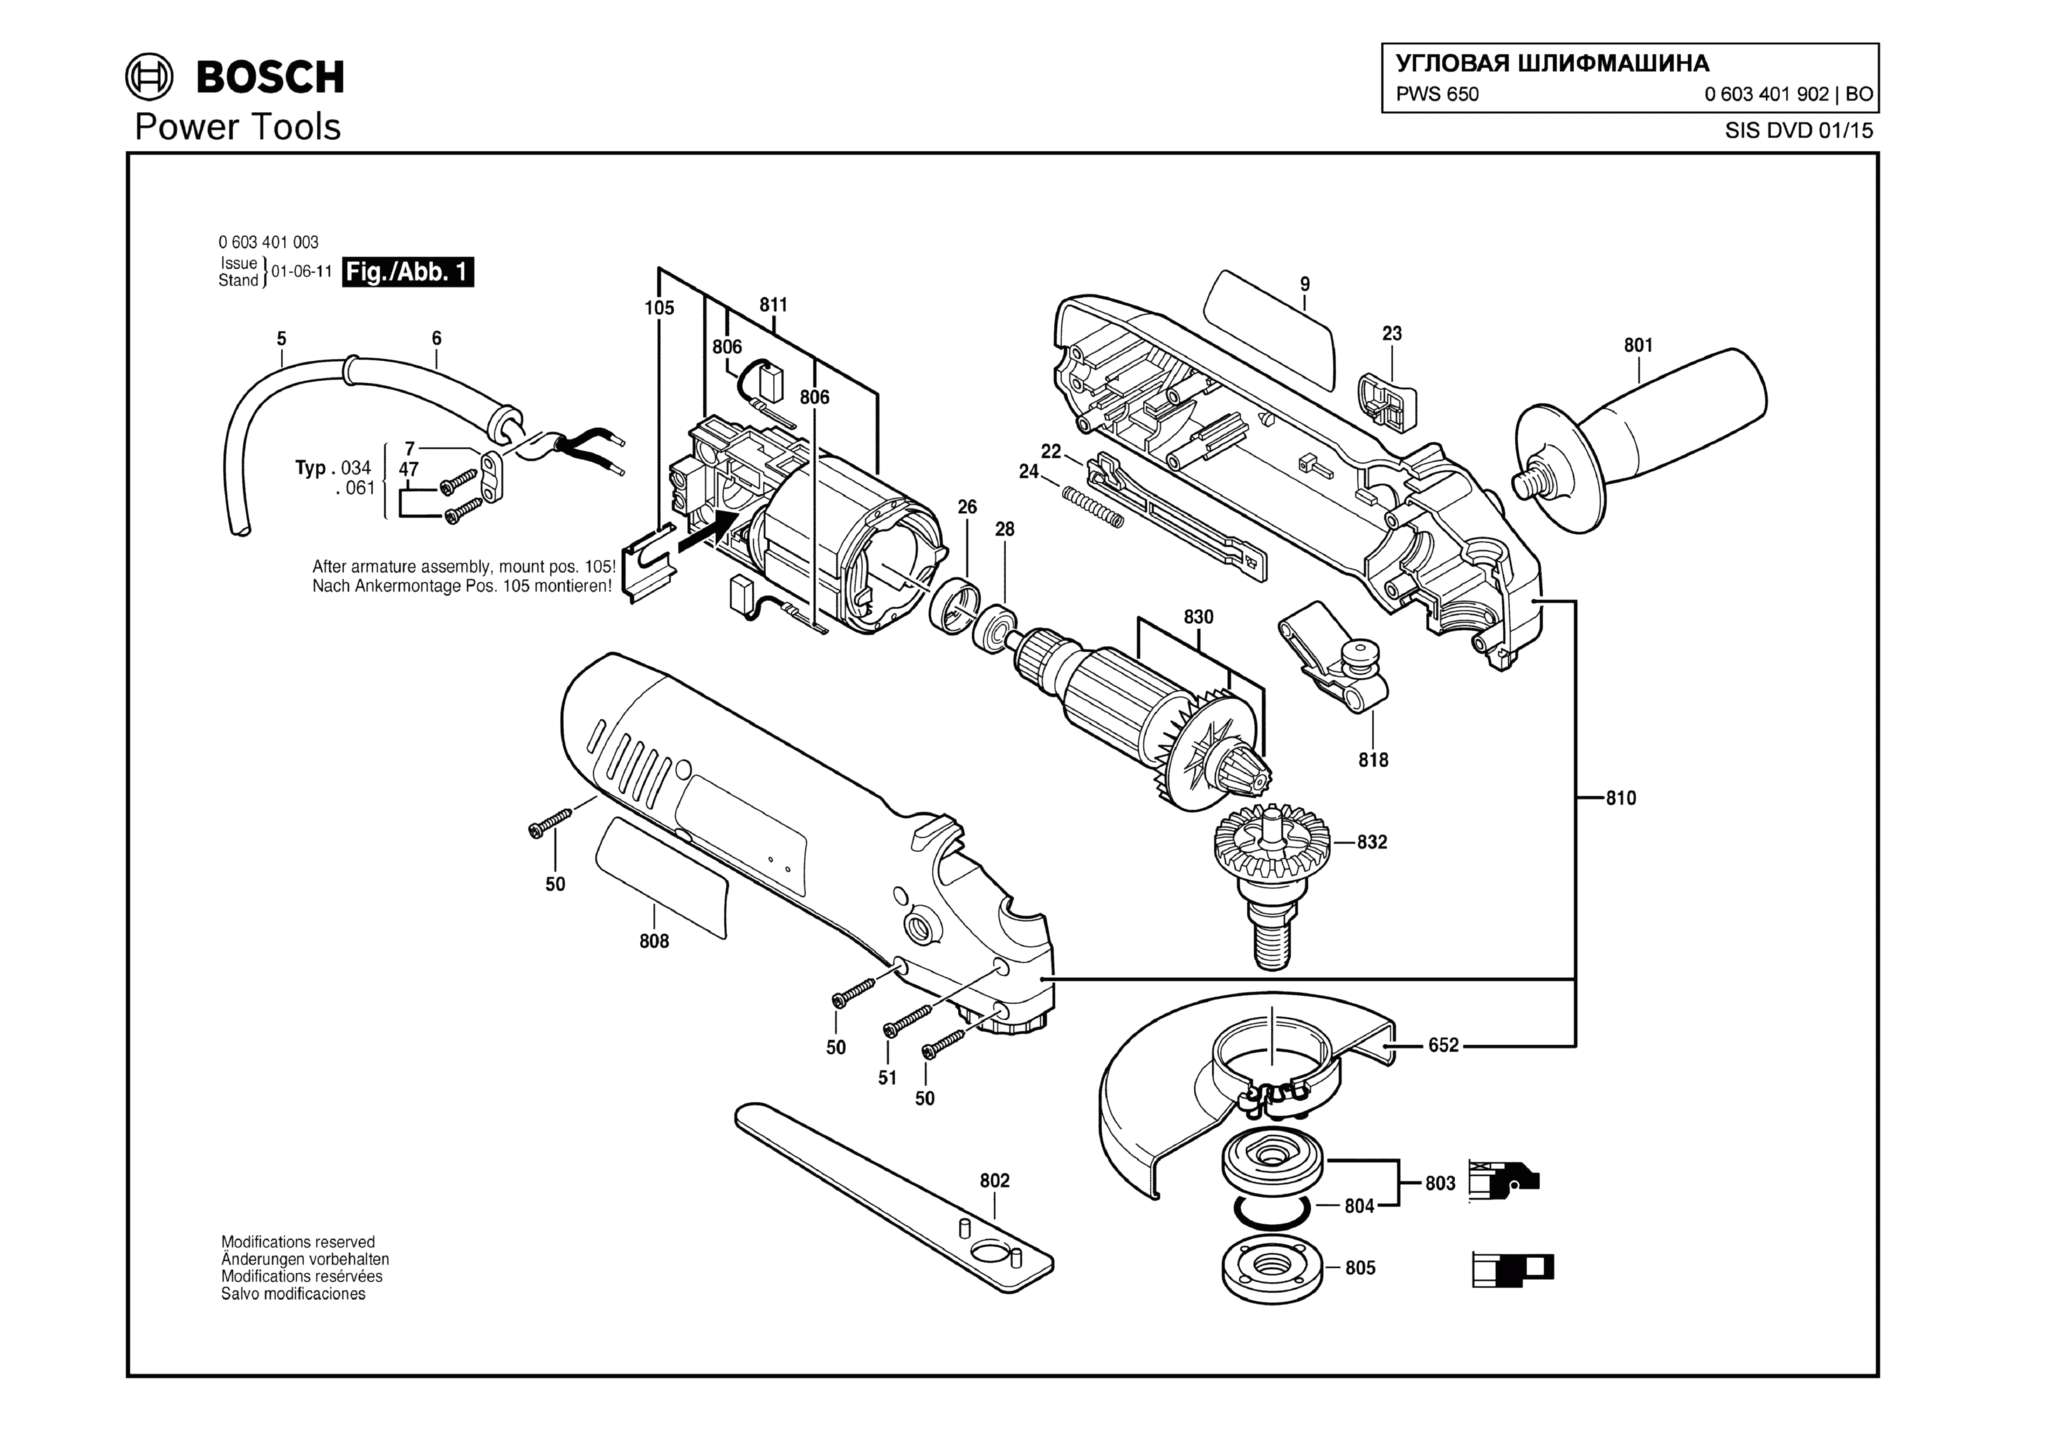 Запчасти, схема и деталировка Bosch PWS 650 (ТИП 0603401902)